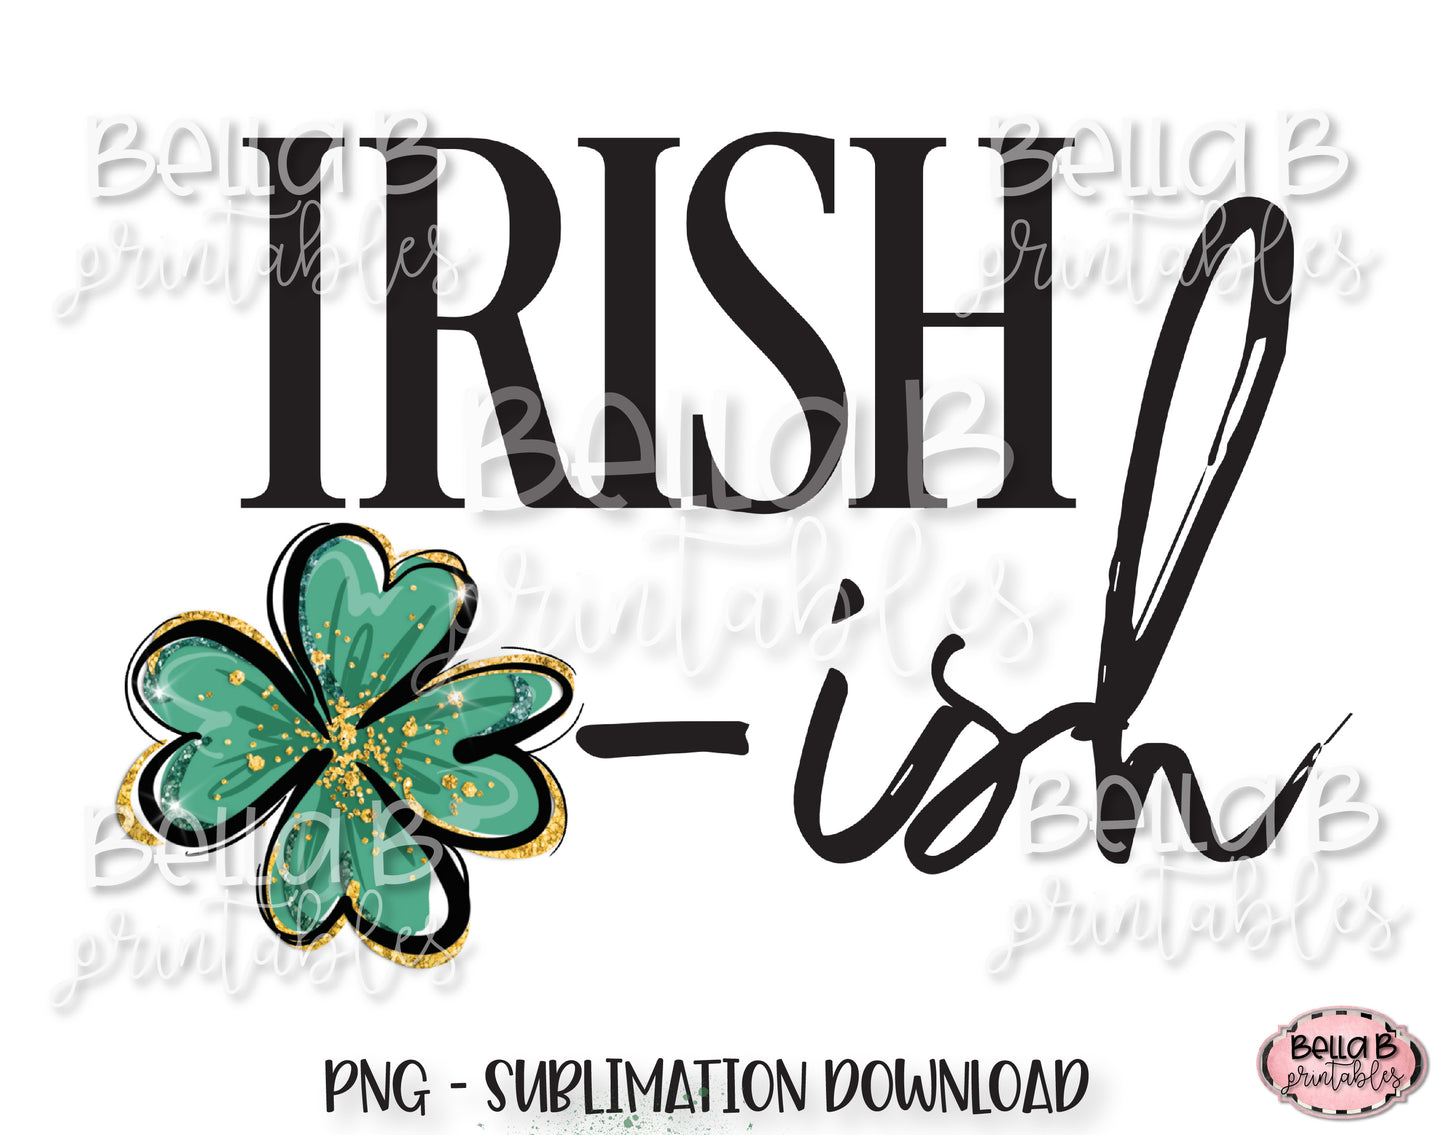 St Patricks Day Sublimation Design, Irish ISH Sublimation